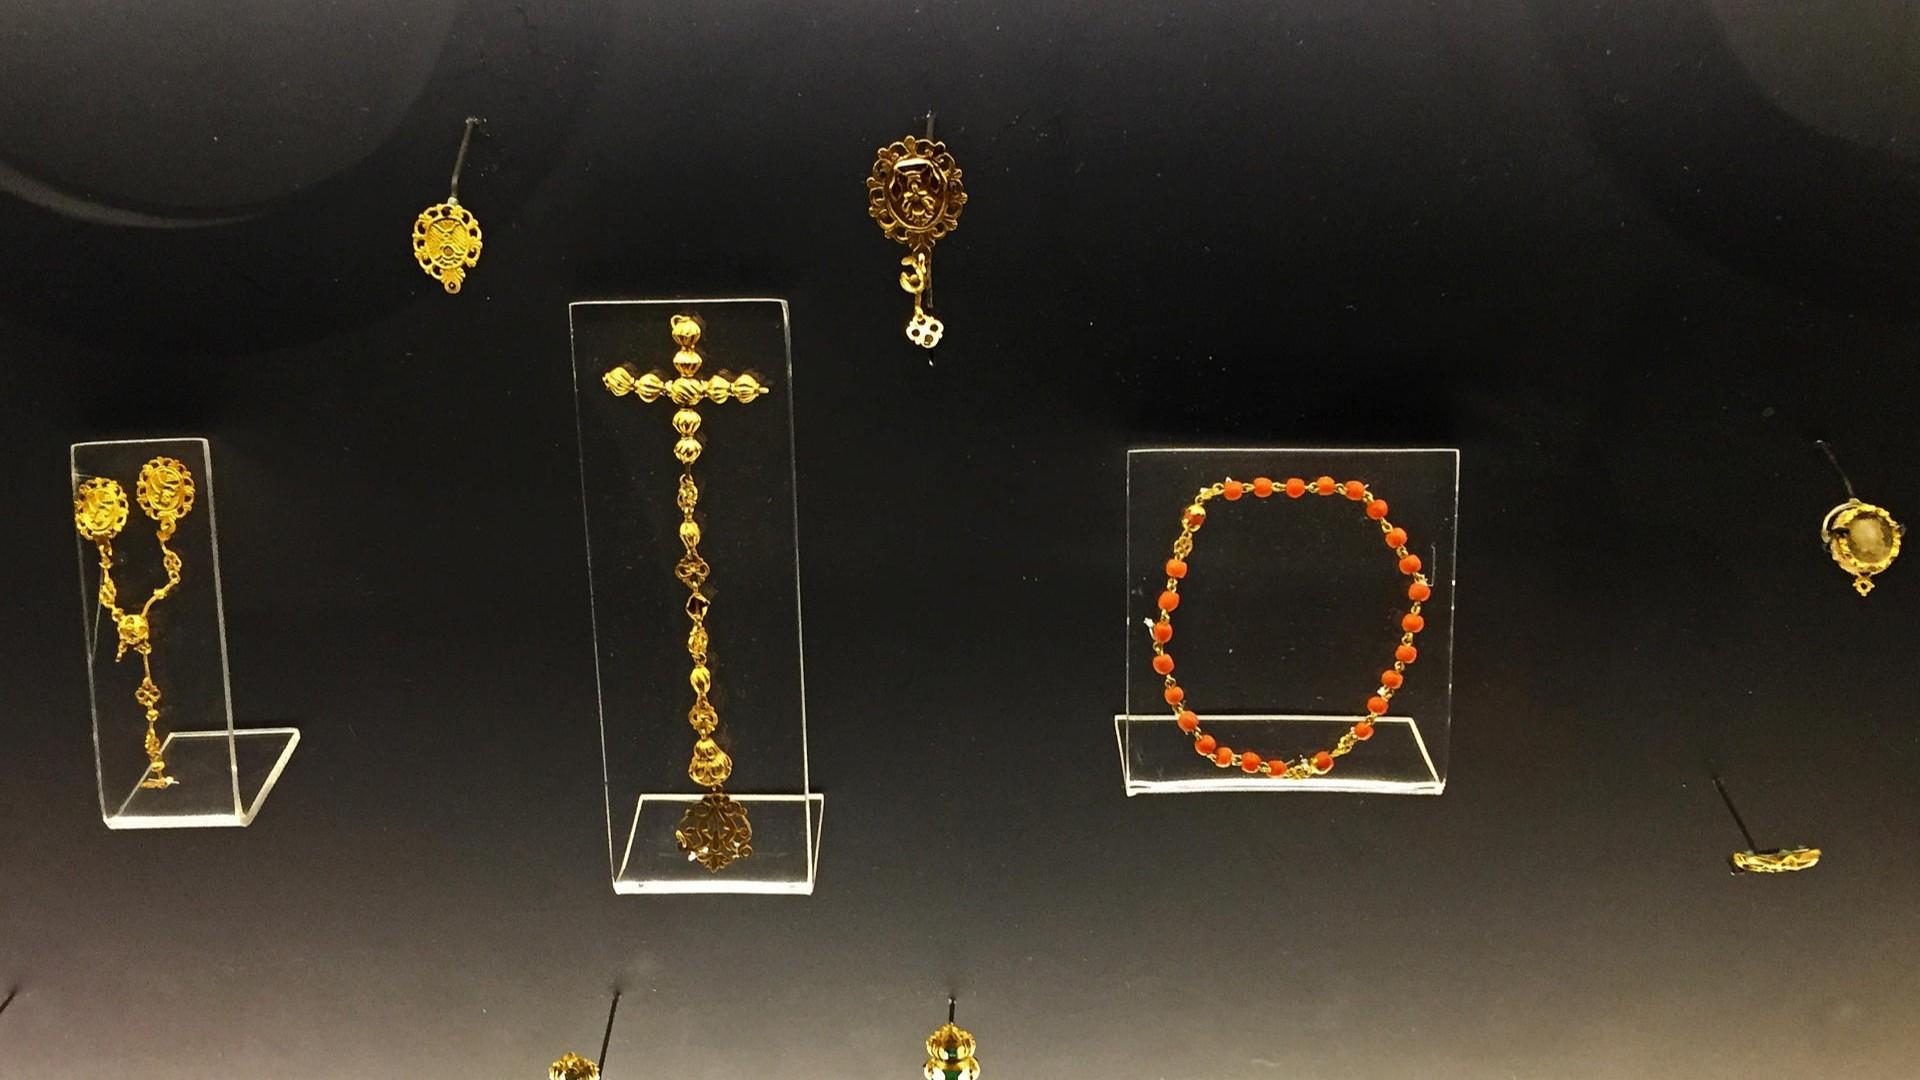  Joyas de oro encontradas en un barco español del siglo XVIII, exhibidas este miércoles en la ciudad de Mérida, Yucatán